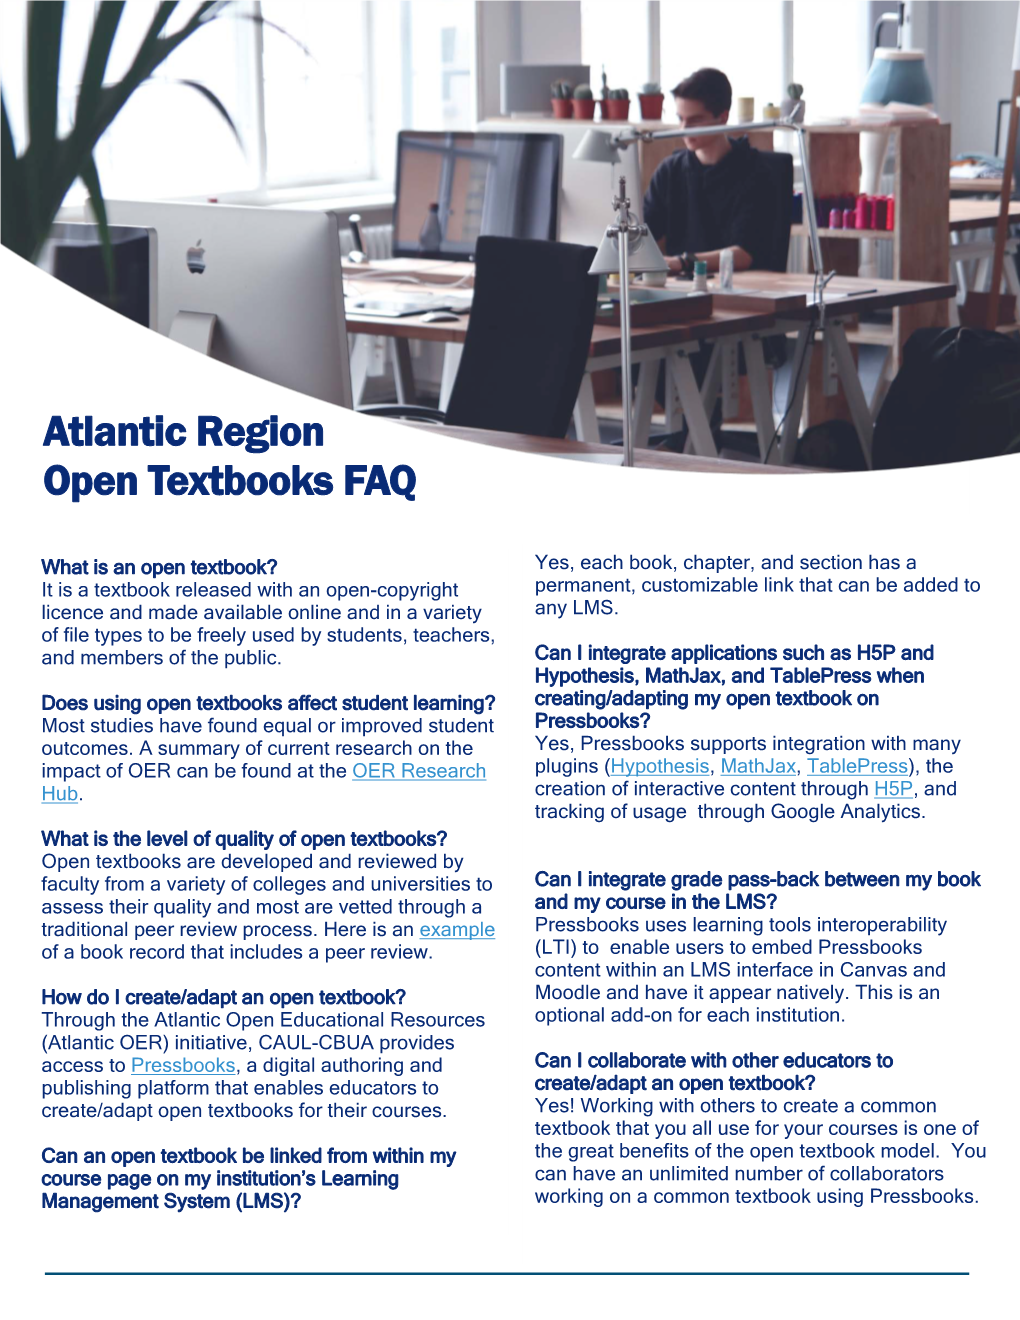 Atlantic Region Open Textbooks FAQ